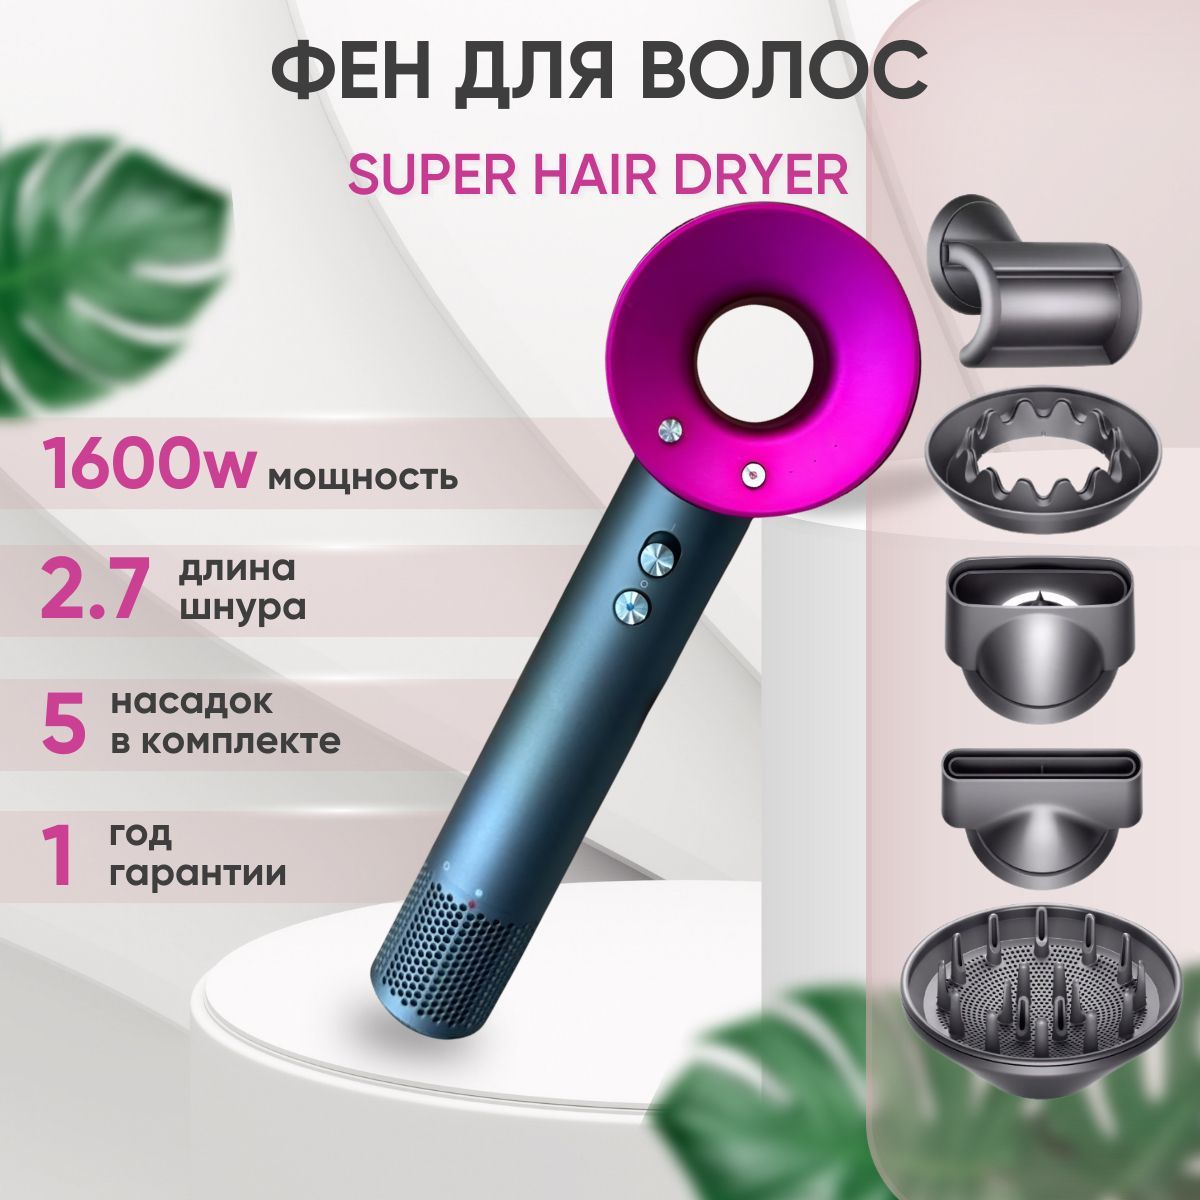 Фен super hair dryer hd15 серый розовый